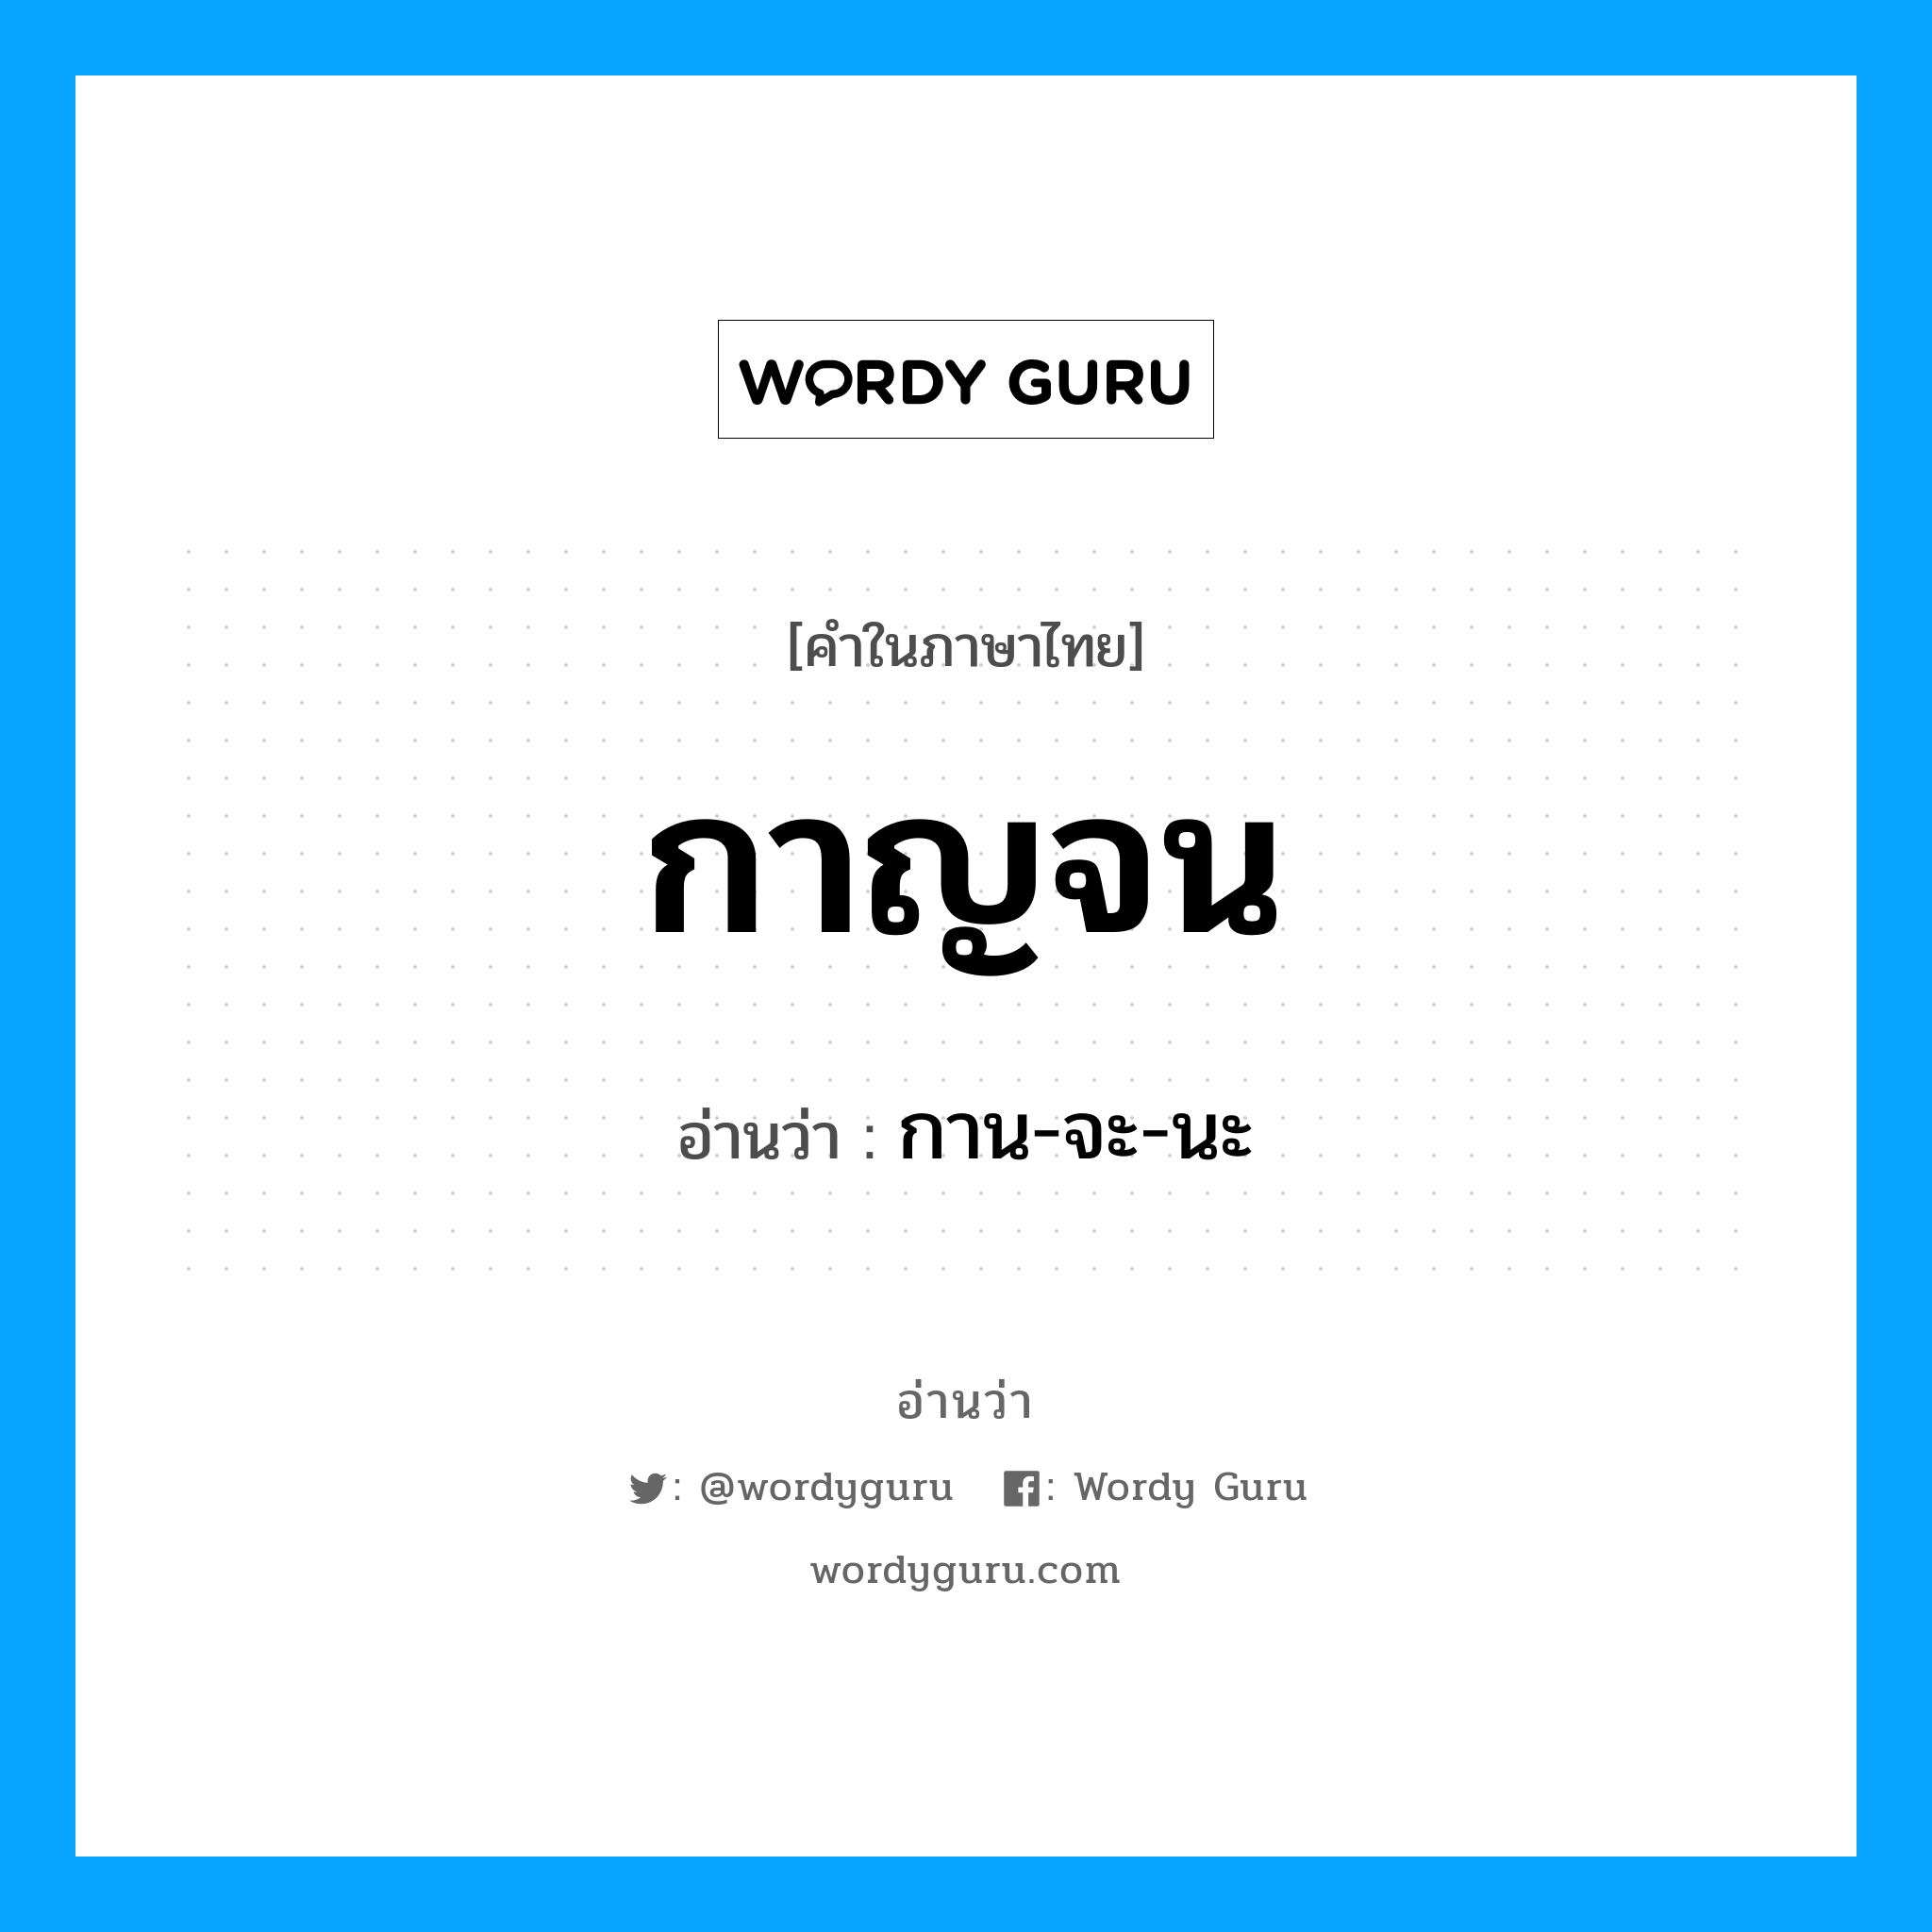 กาน-จะ-นะ เป็นคำอ่านของคำไหน?, คำในภาษาไทย กาน-จะ-นะ อ่านว่า กาญจน